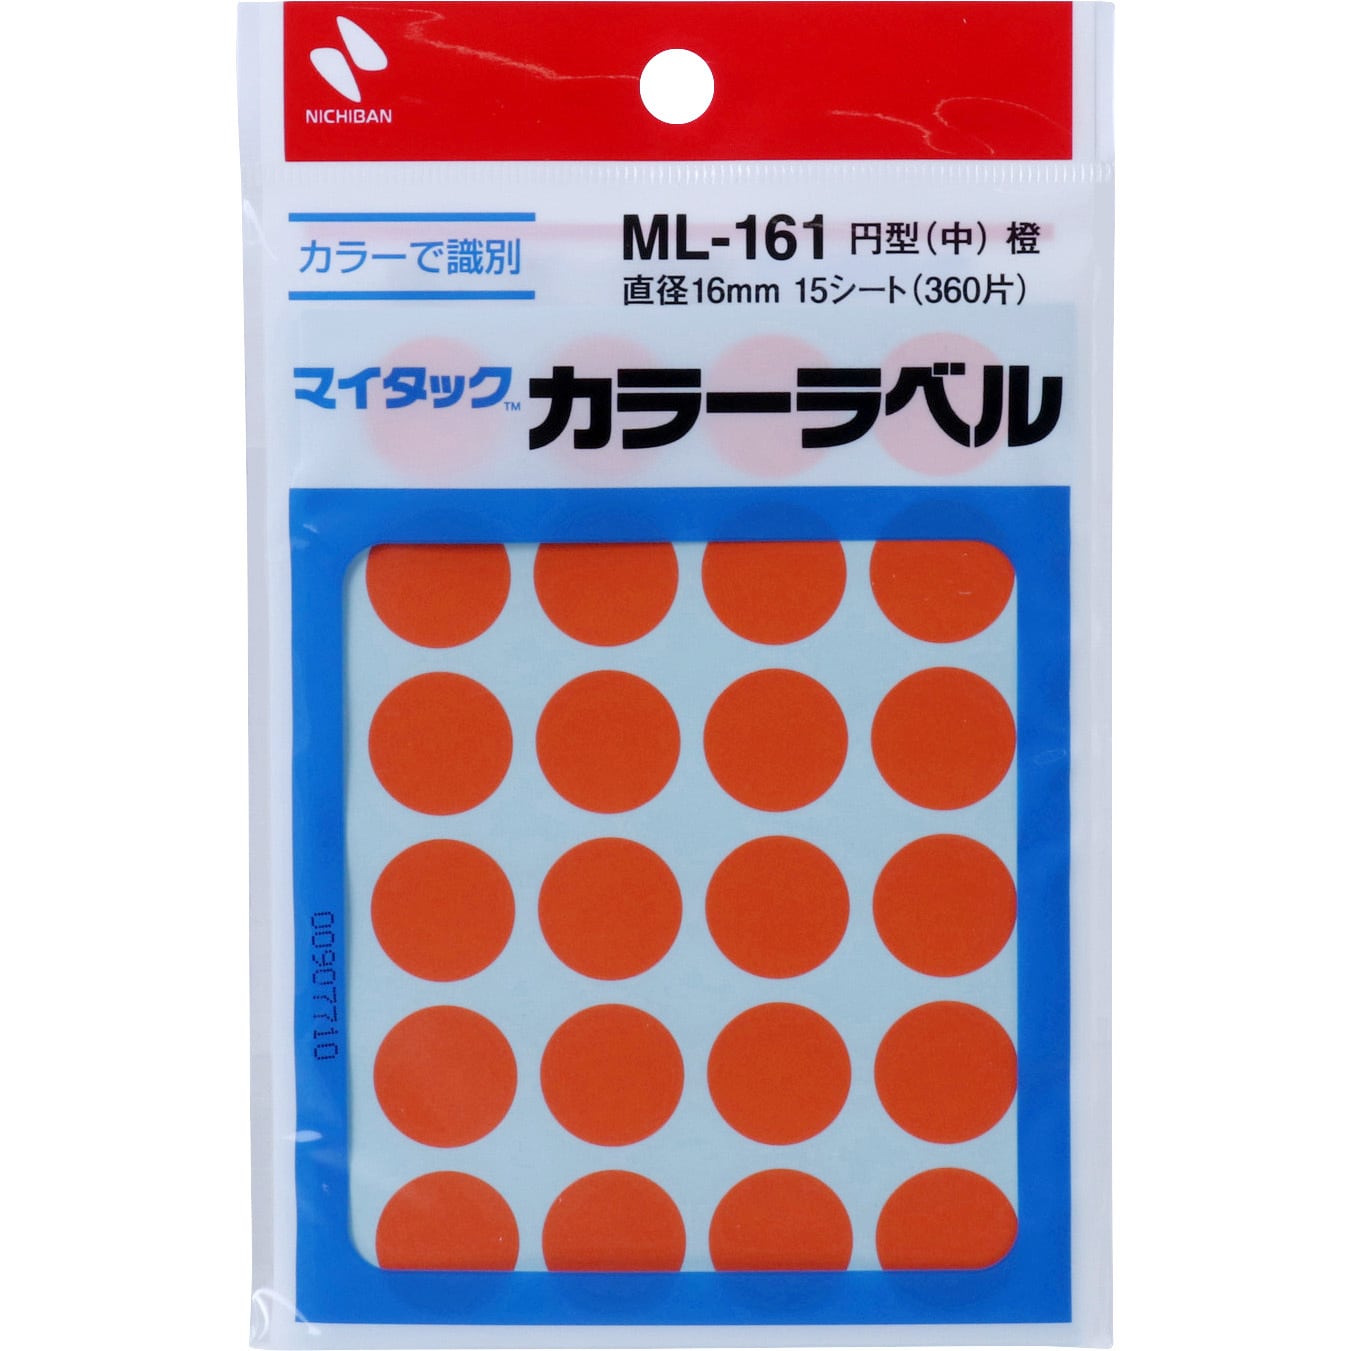 ML-161-13 オレンジ マイタックラベル 丸 1パック(24片×15シート